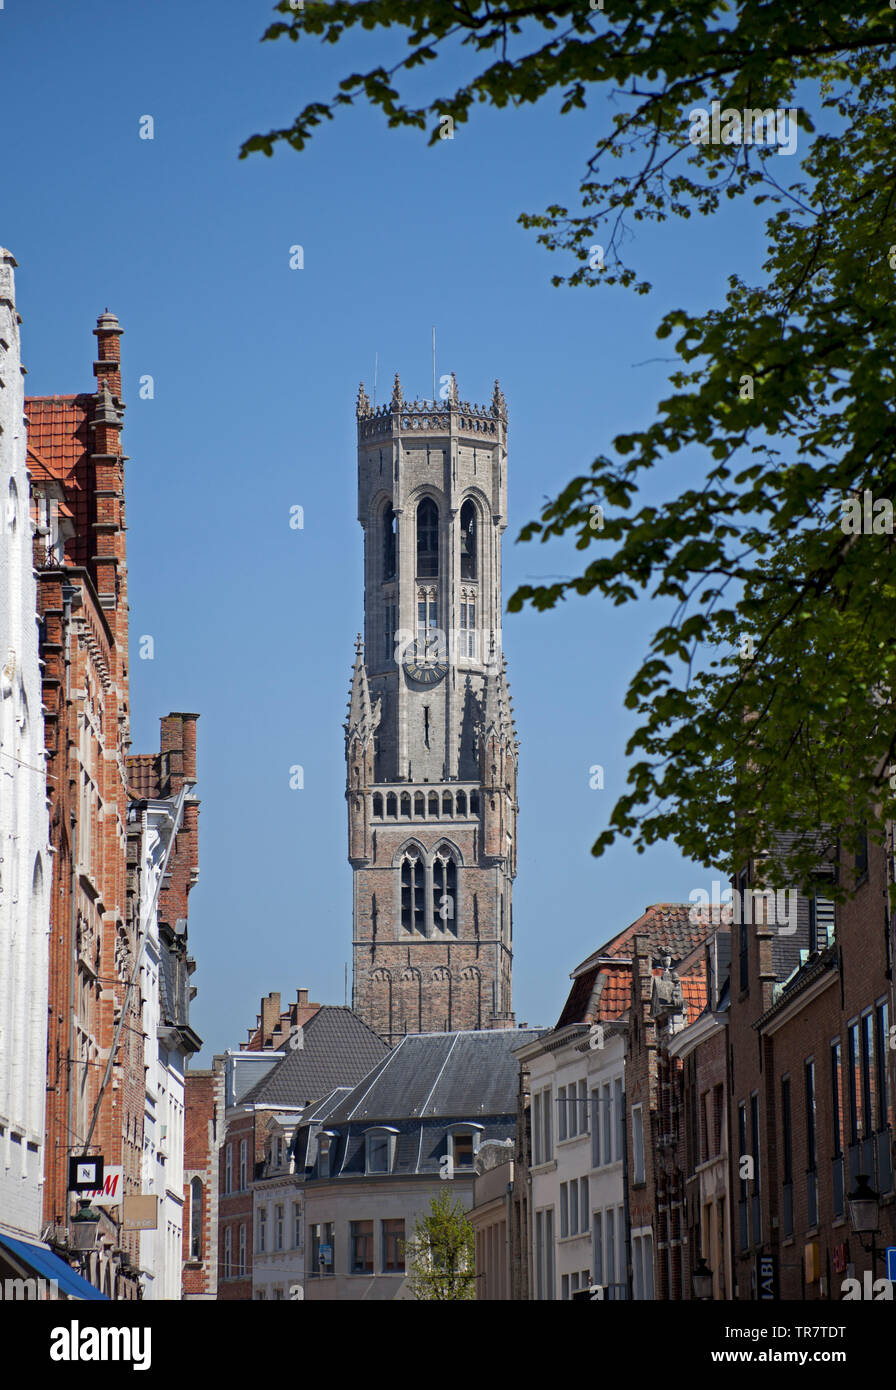 Tour de l'horloge du beffroi, Markt, Bruges, Belgique, Europe Banque D'Images